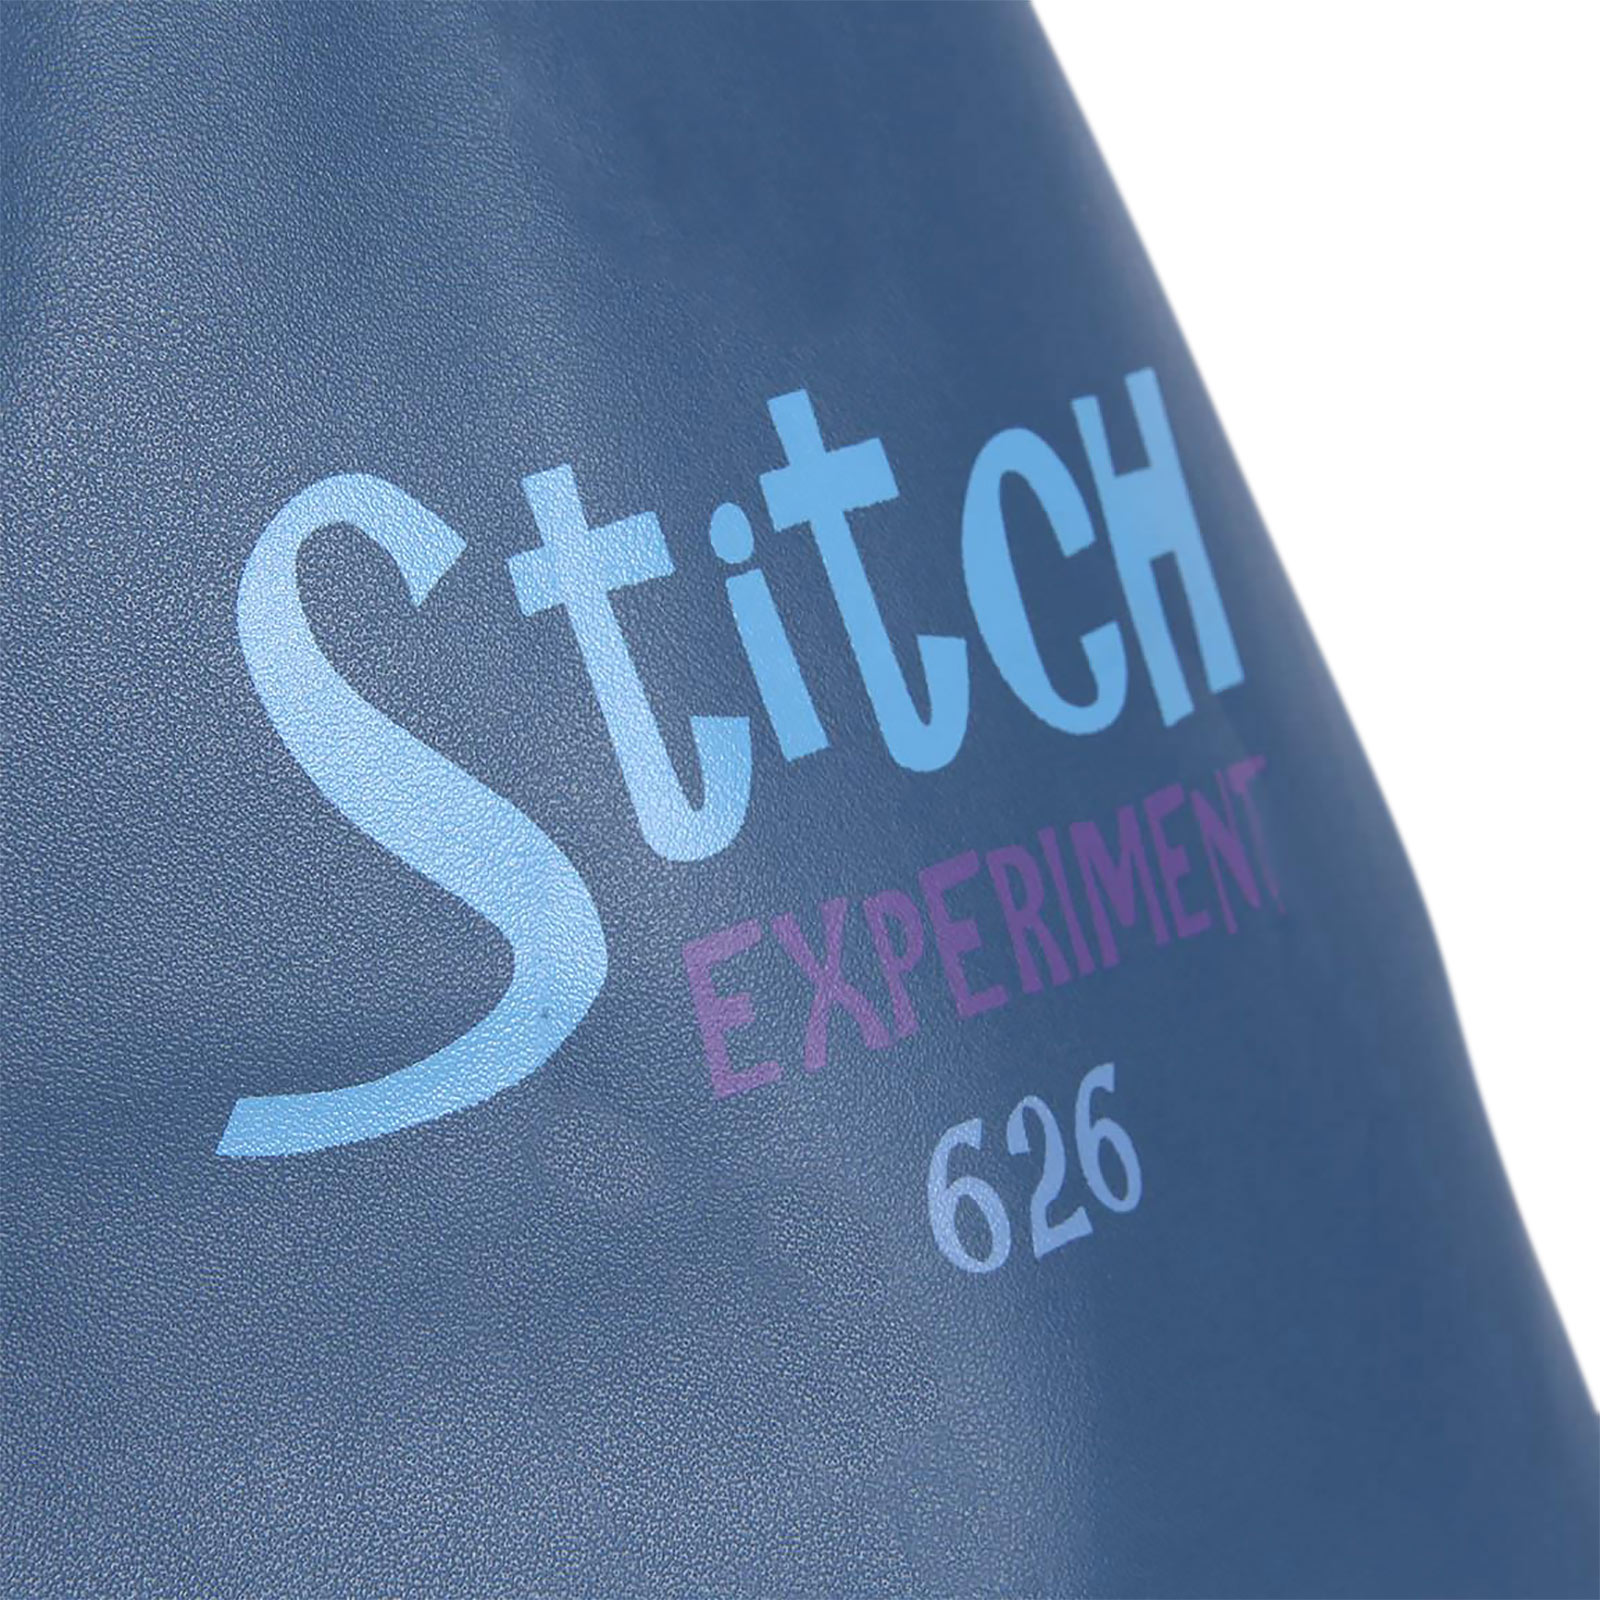 Lilo & Stitch - Sac Shopper Stitch